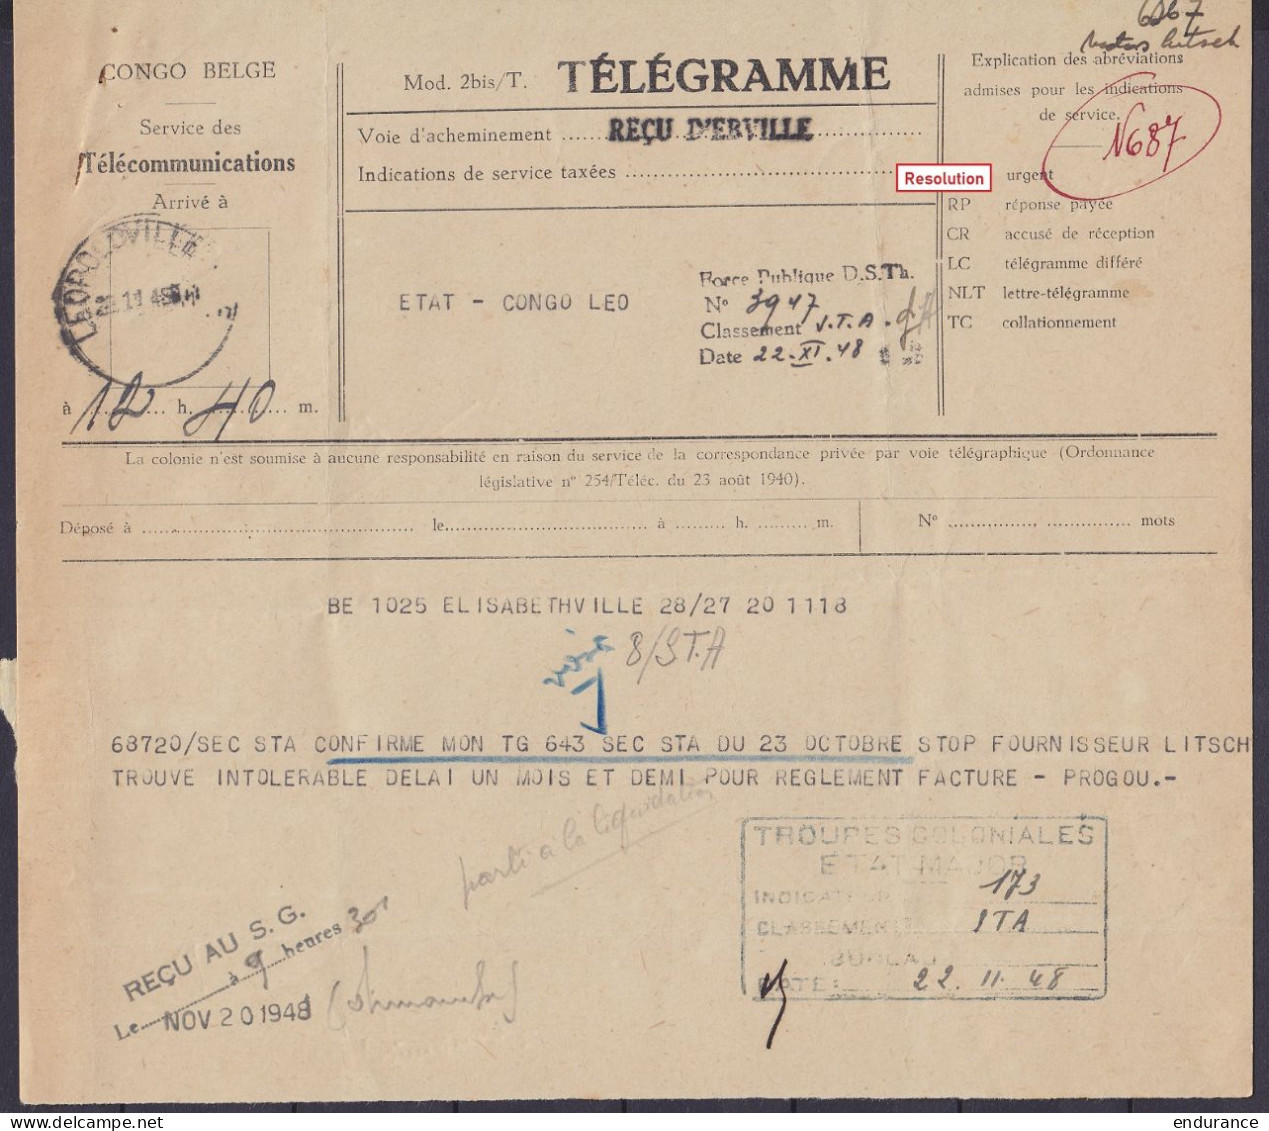 Congo Belge - Télégrammes - Superbe et rare collection + de 60 pièces (cachets destination, marques départ, reçus et doc